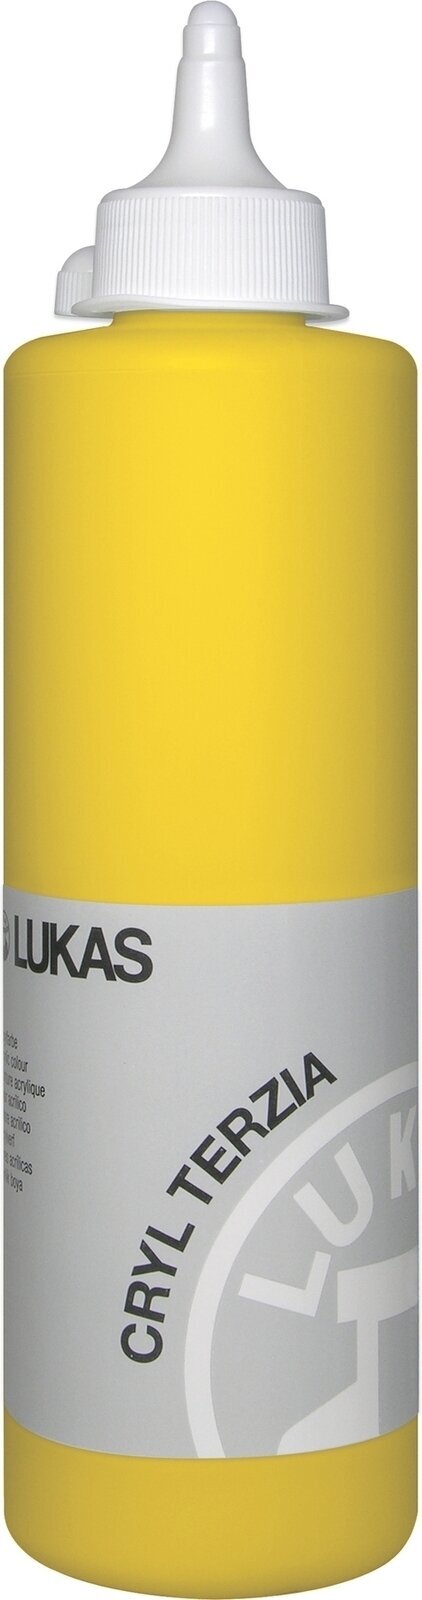 Peinture acrylique Lukas Cryl Terzia Acrylic Paint Plastic Bottle Peinture acrylique Cadmium Yellow Light Hue 500 ml 1 pc